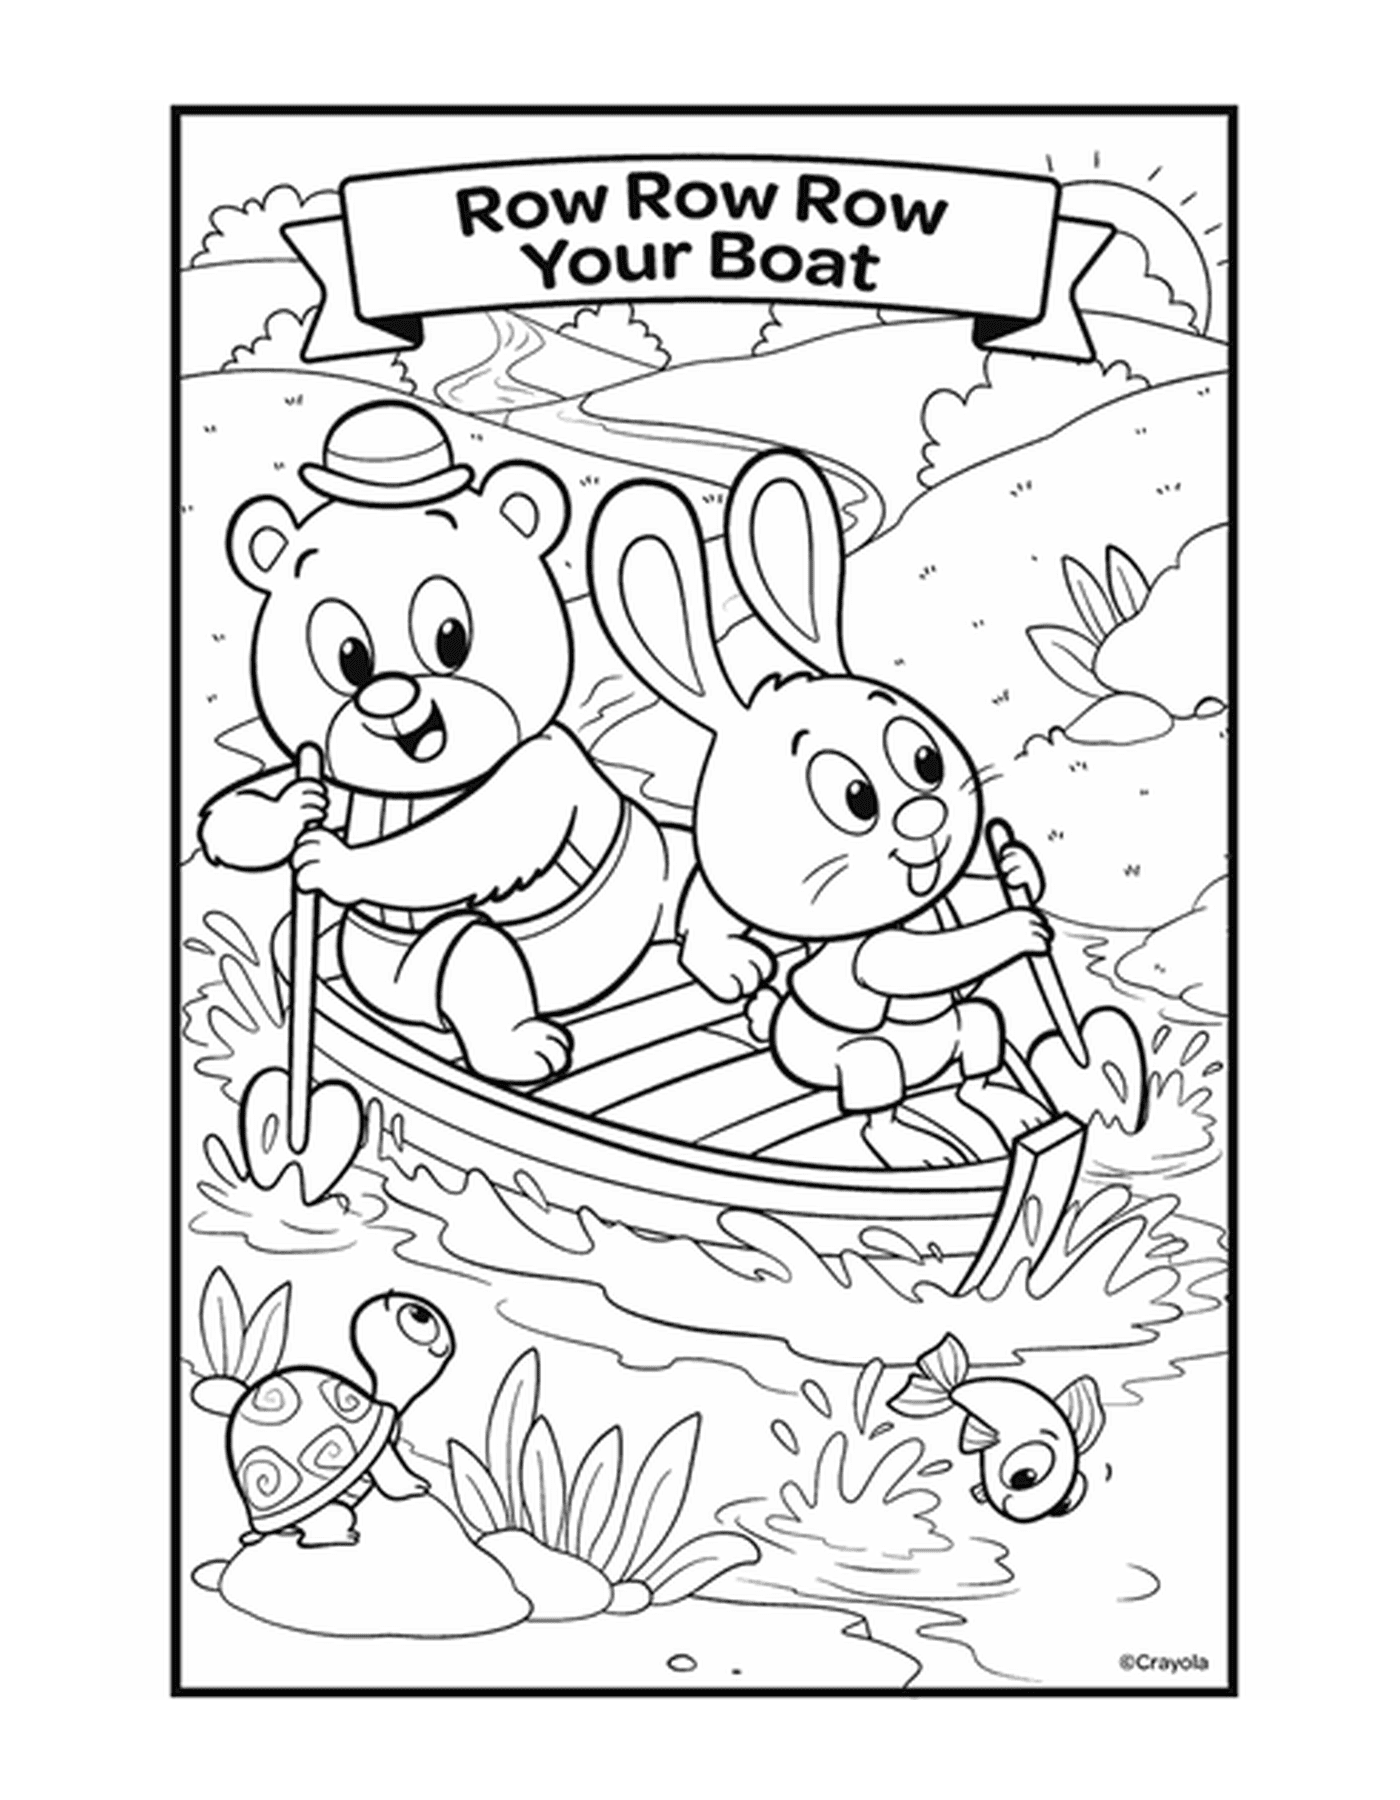   La comptine Row, Row, Row Your Boat avec deux animaux dans un bateau sur l'eau 